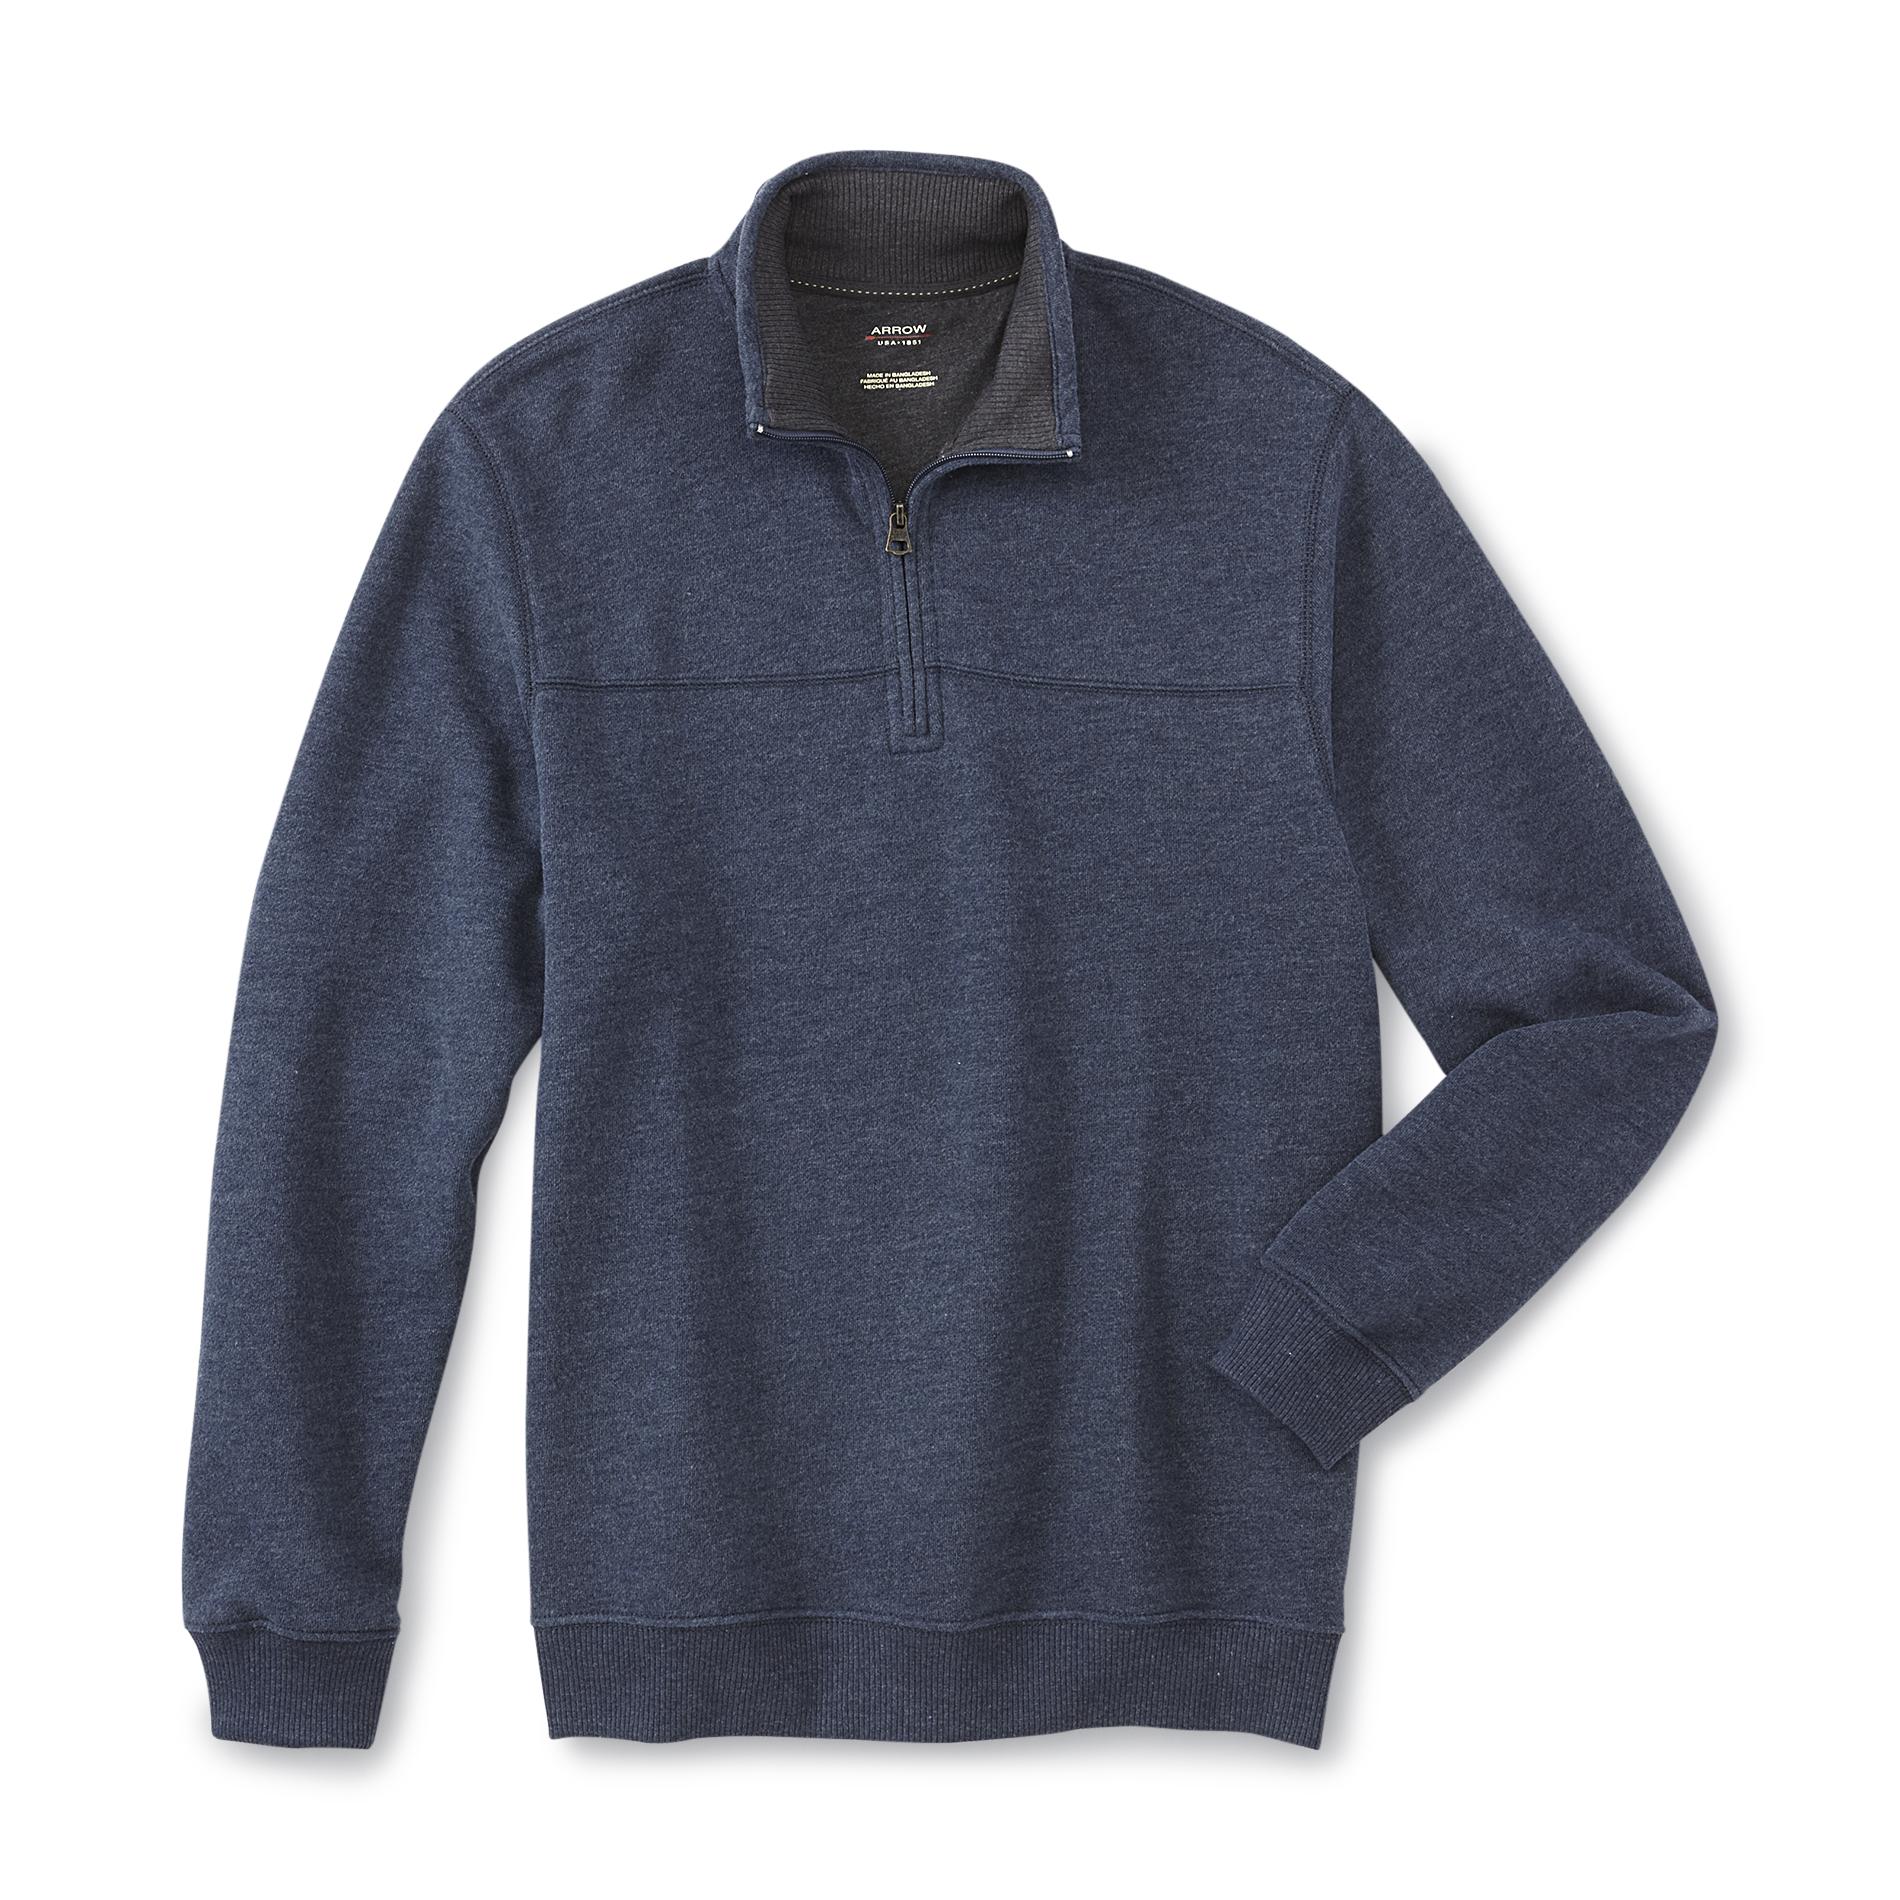 Arrow Men's Quarter-Zip Fleece-Lined Sweatshirt - Clothing - Men's ...